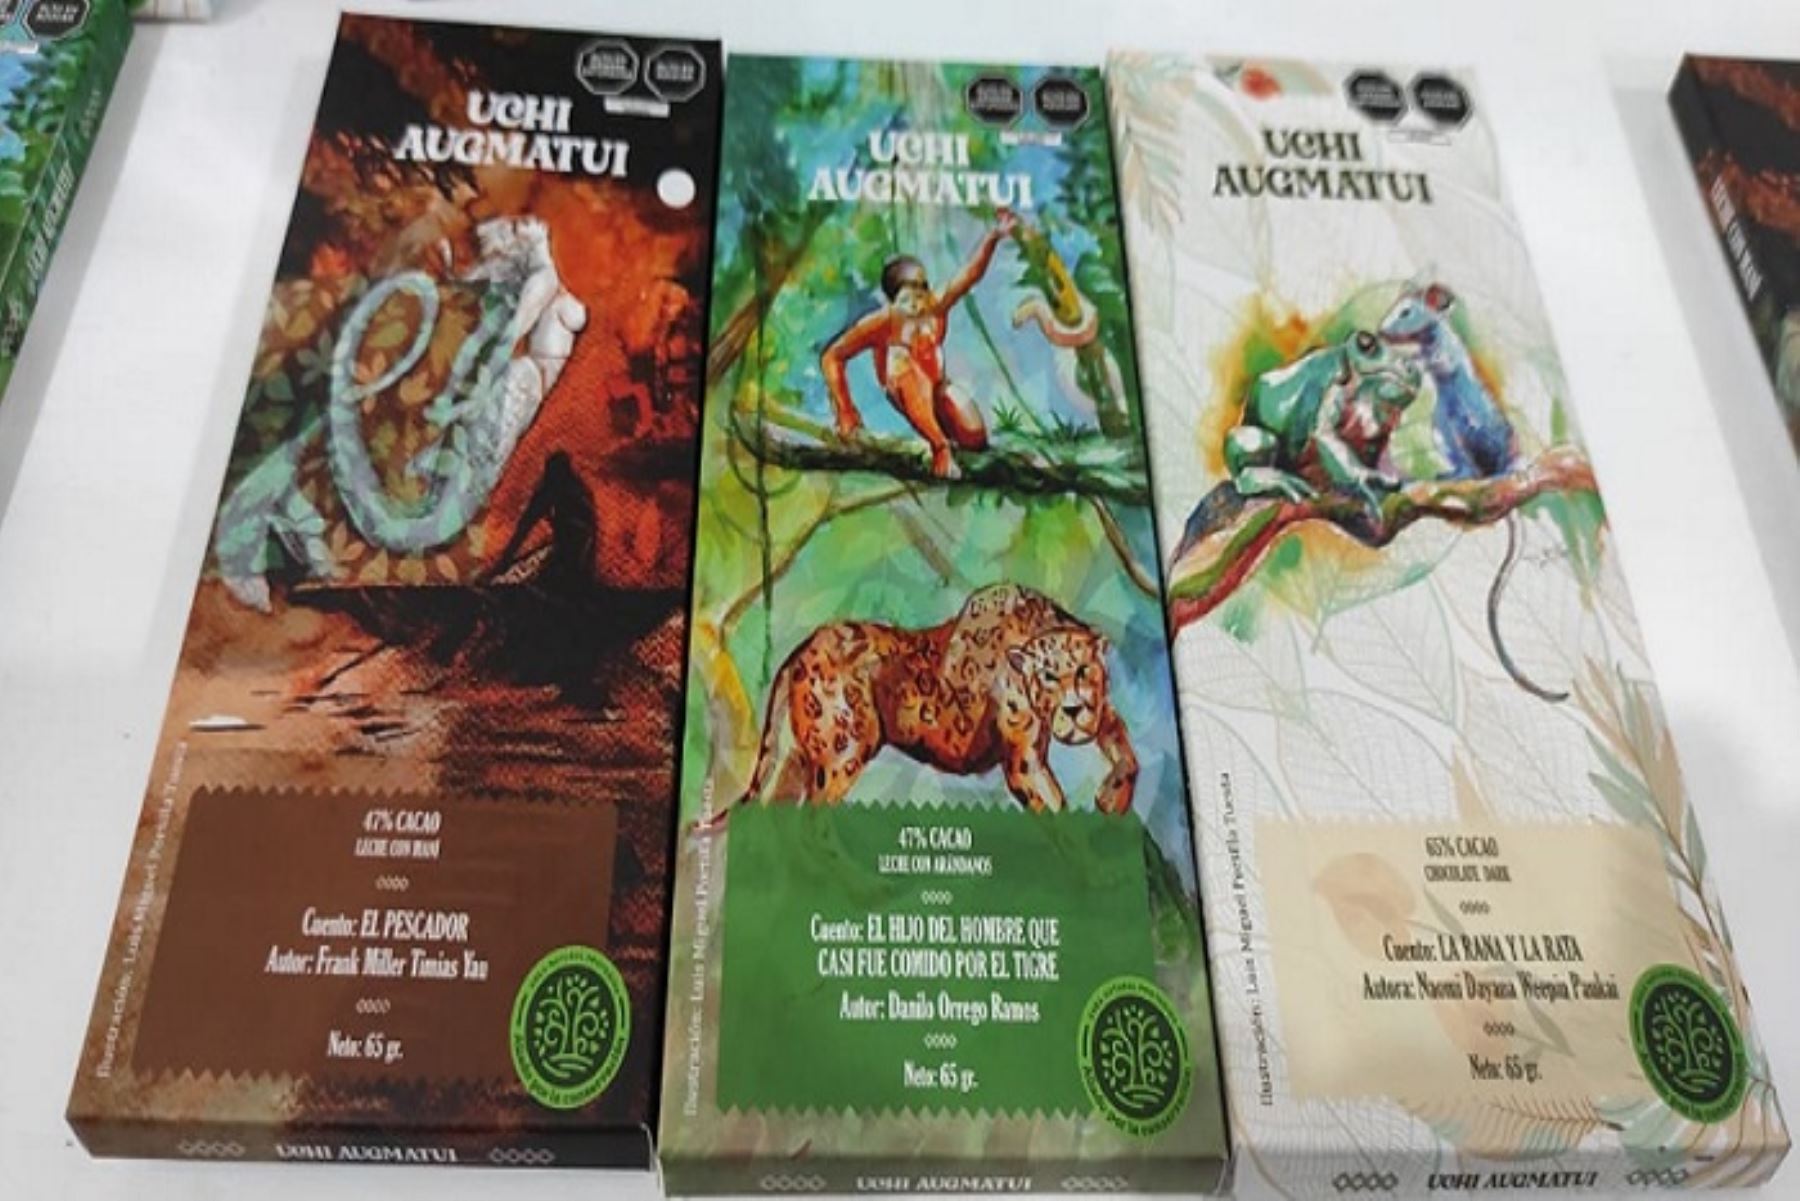 El lanzamiento de los chocolates “Uchi Augmatui” se hizo durante la ExpoAmazónica 2022. Las ventas de la obra coleccionable ayudarán a implementar una biblioteca en la comunidad de Urskusa.